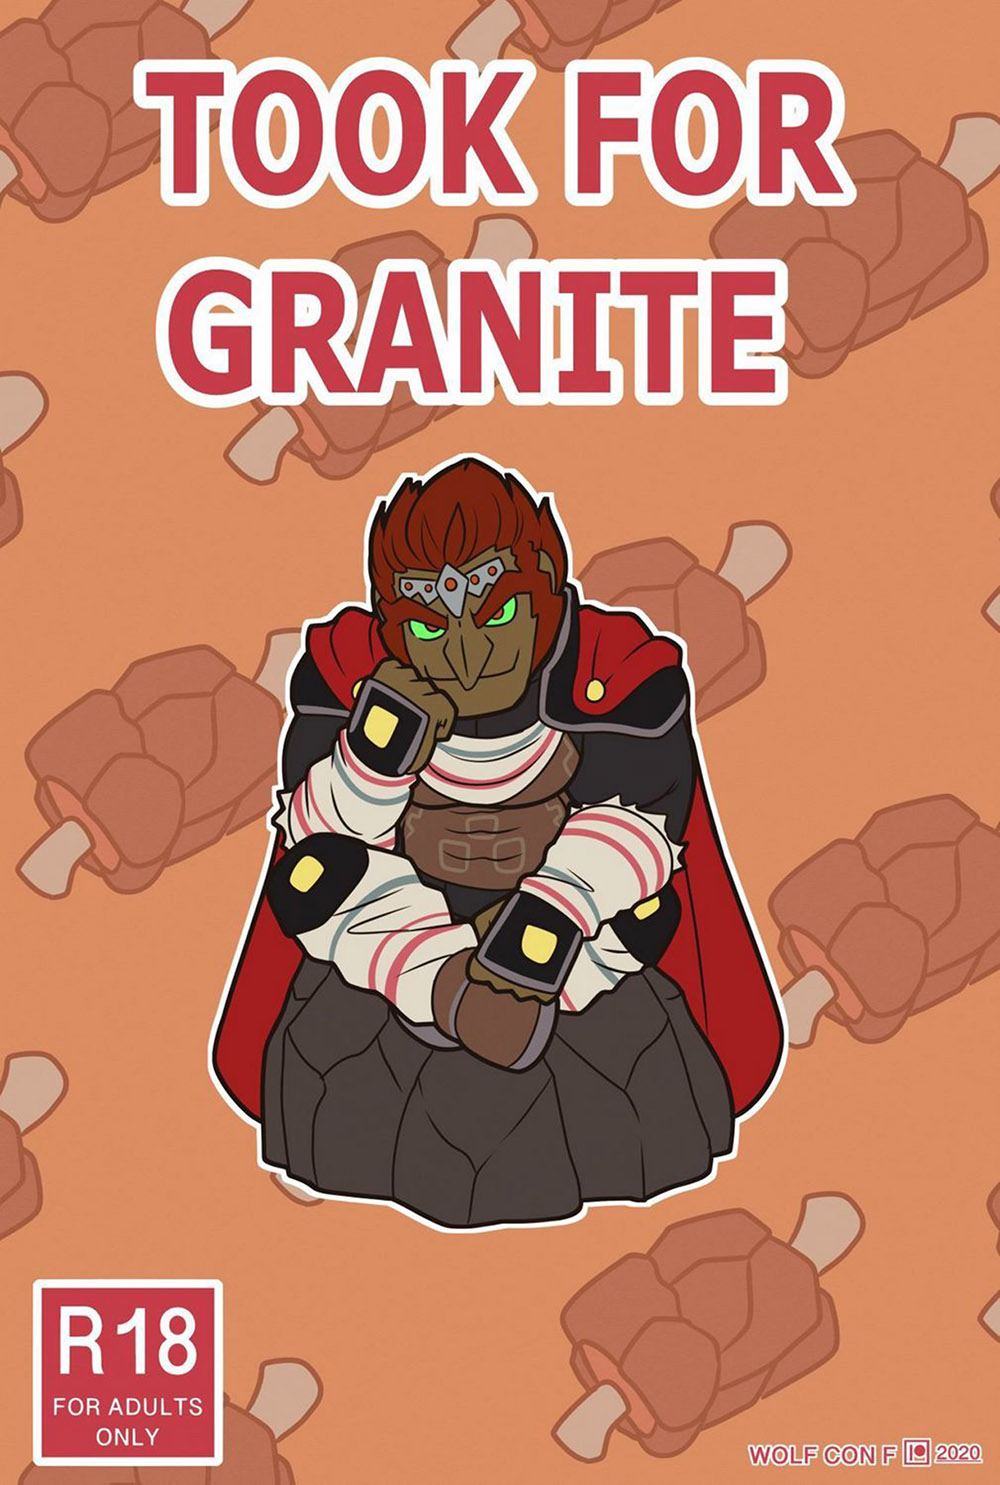 TOOK for Granite